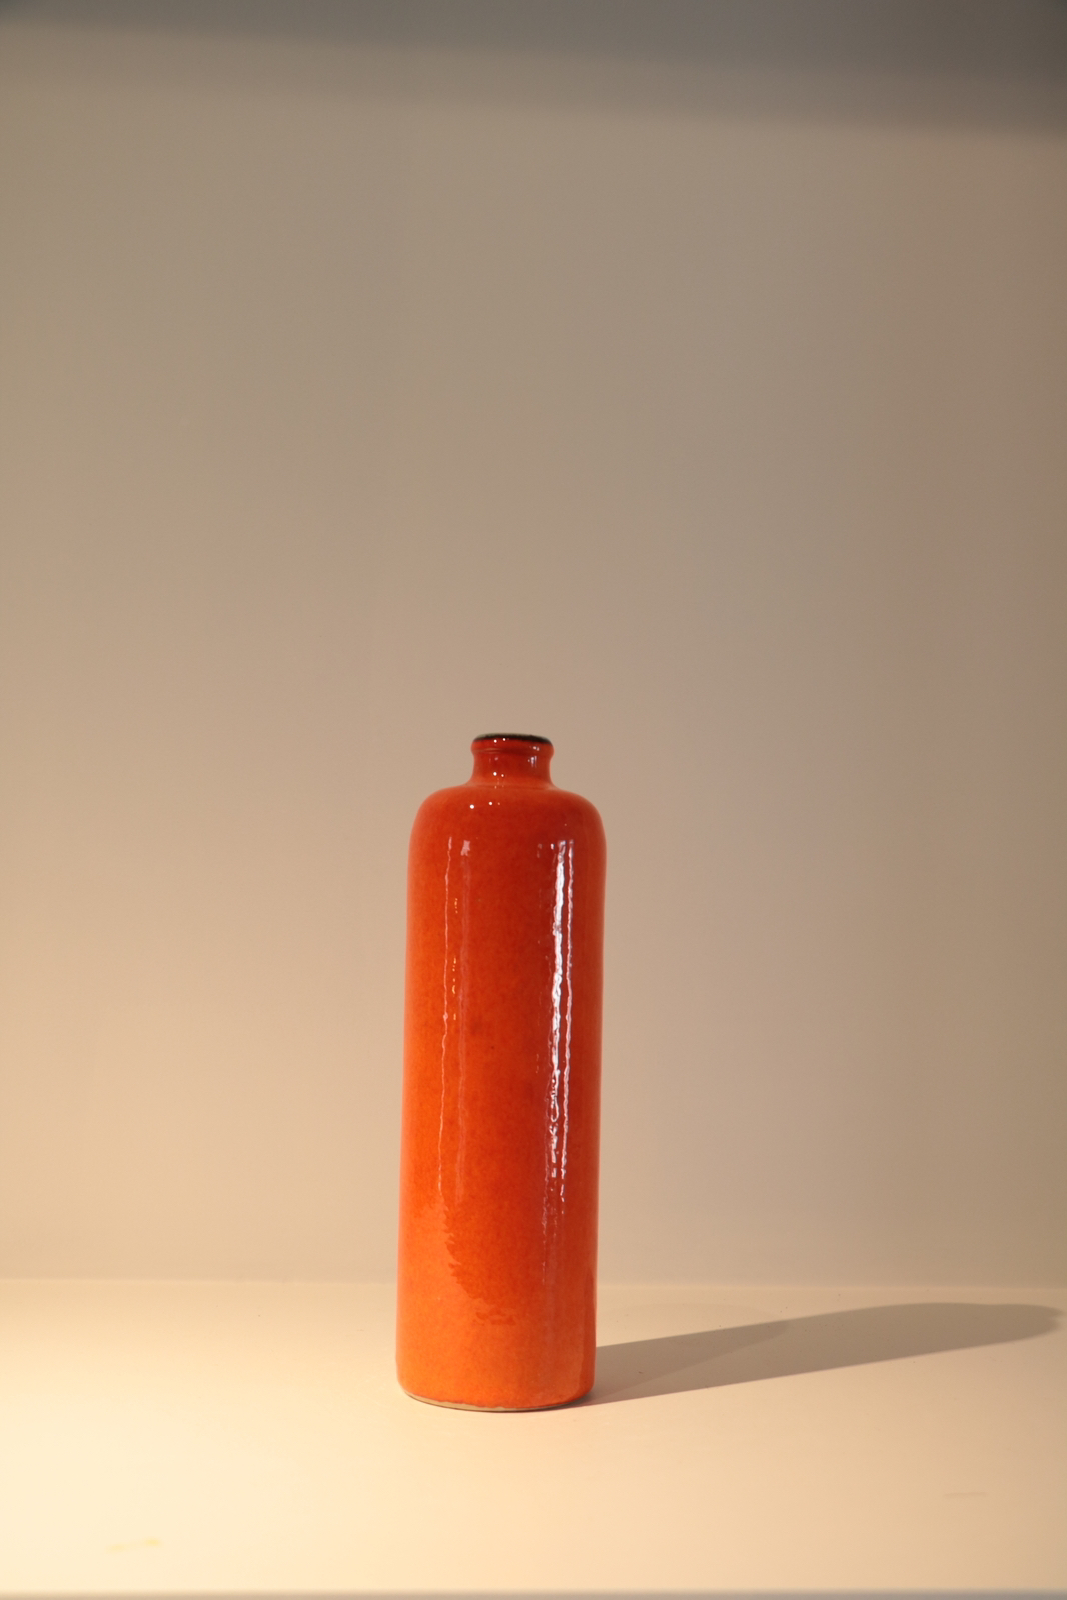 Orange bottle